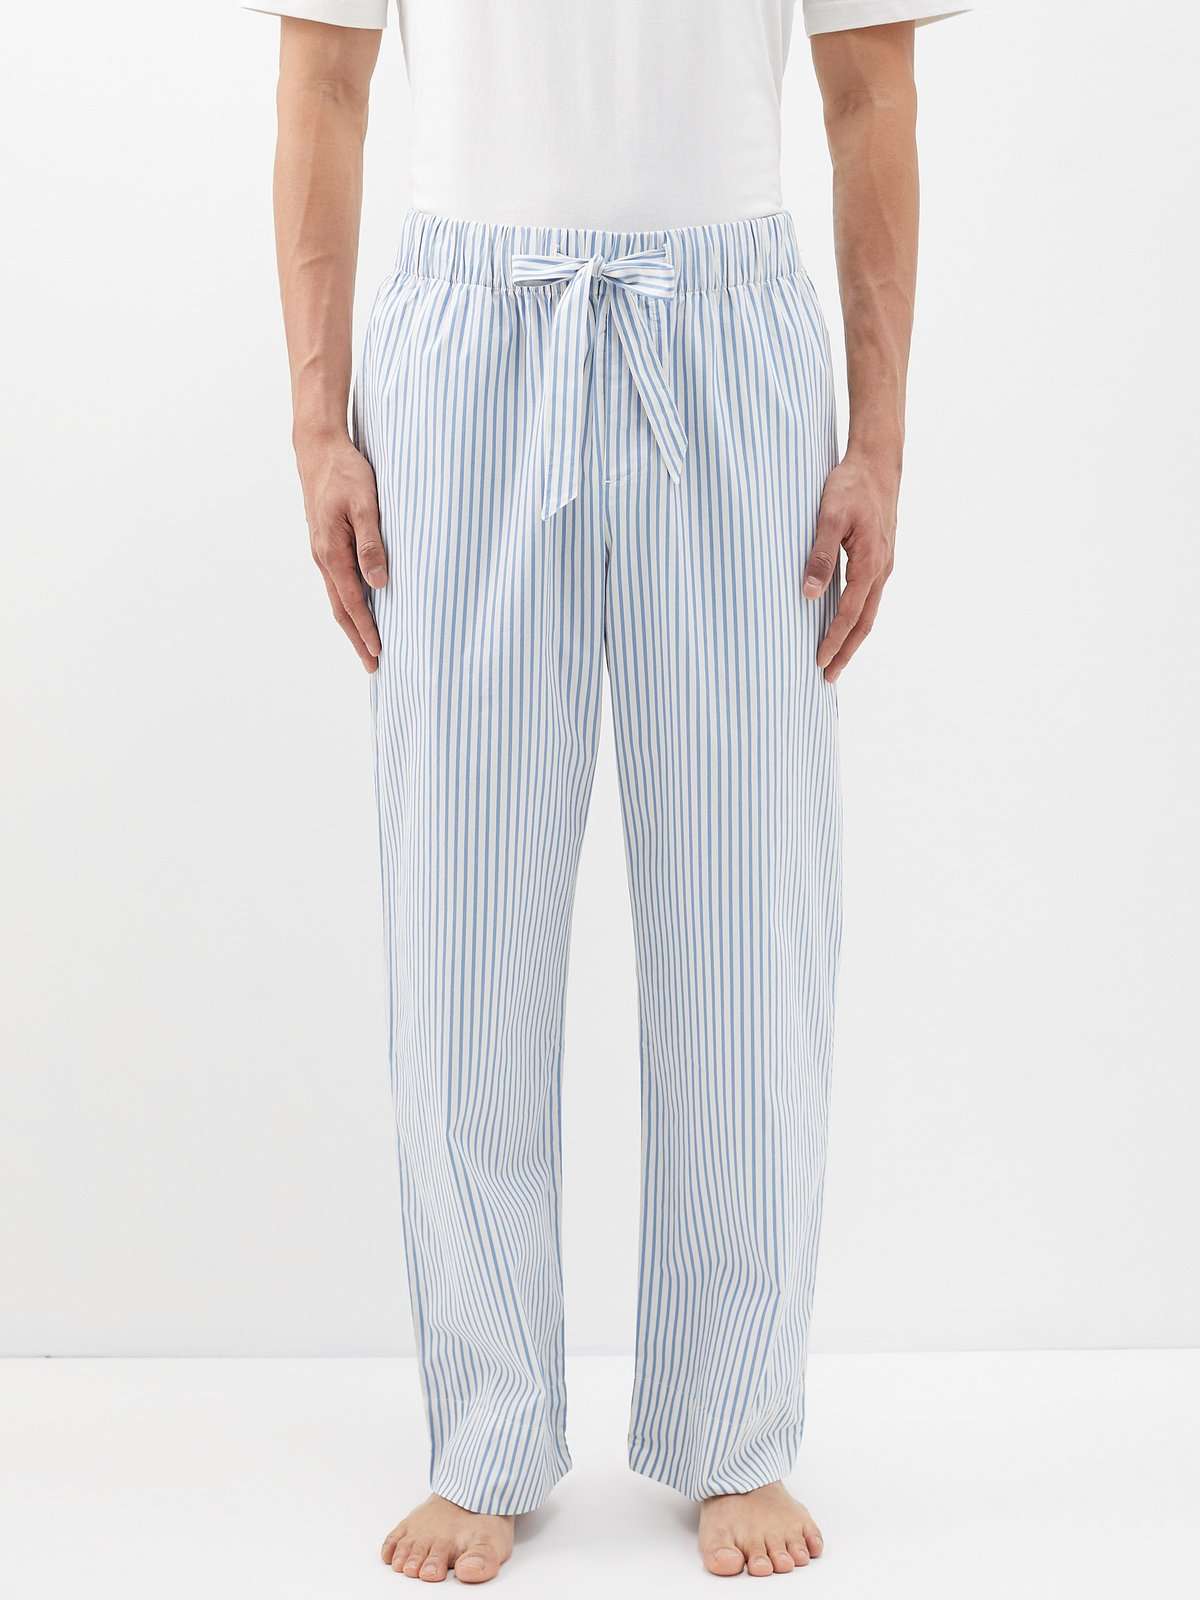 Полосатые пижамные брюки из органического хлопка